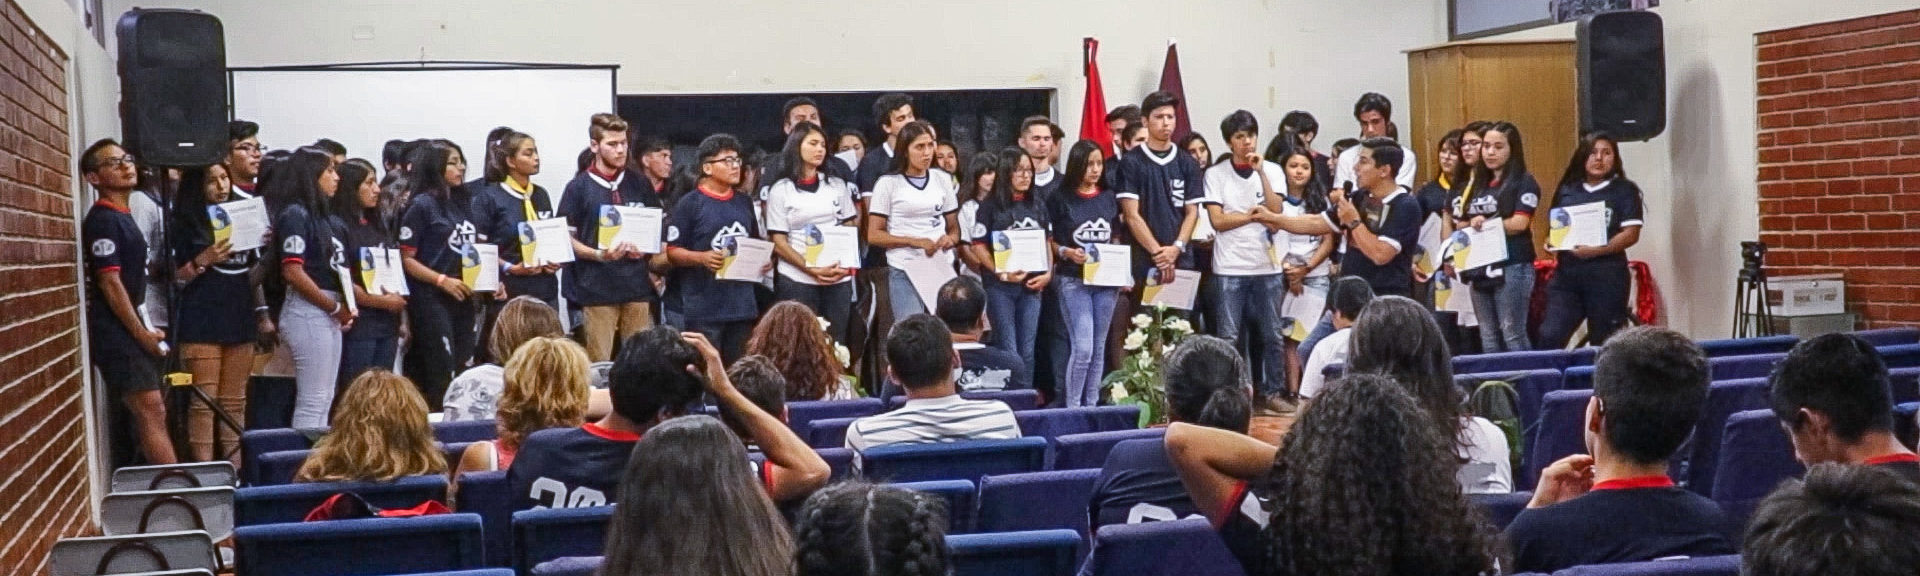 77 Alumnos en total fueron graduados de la Escuela de Misiones Transcultural de la ANCh